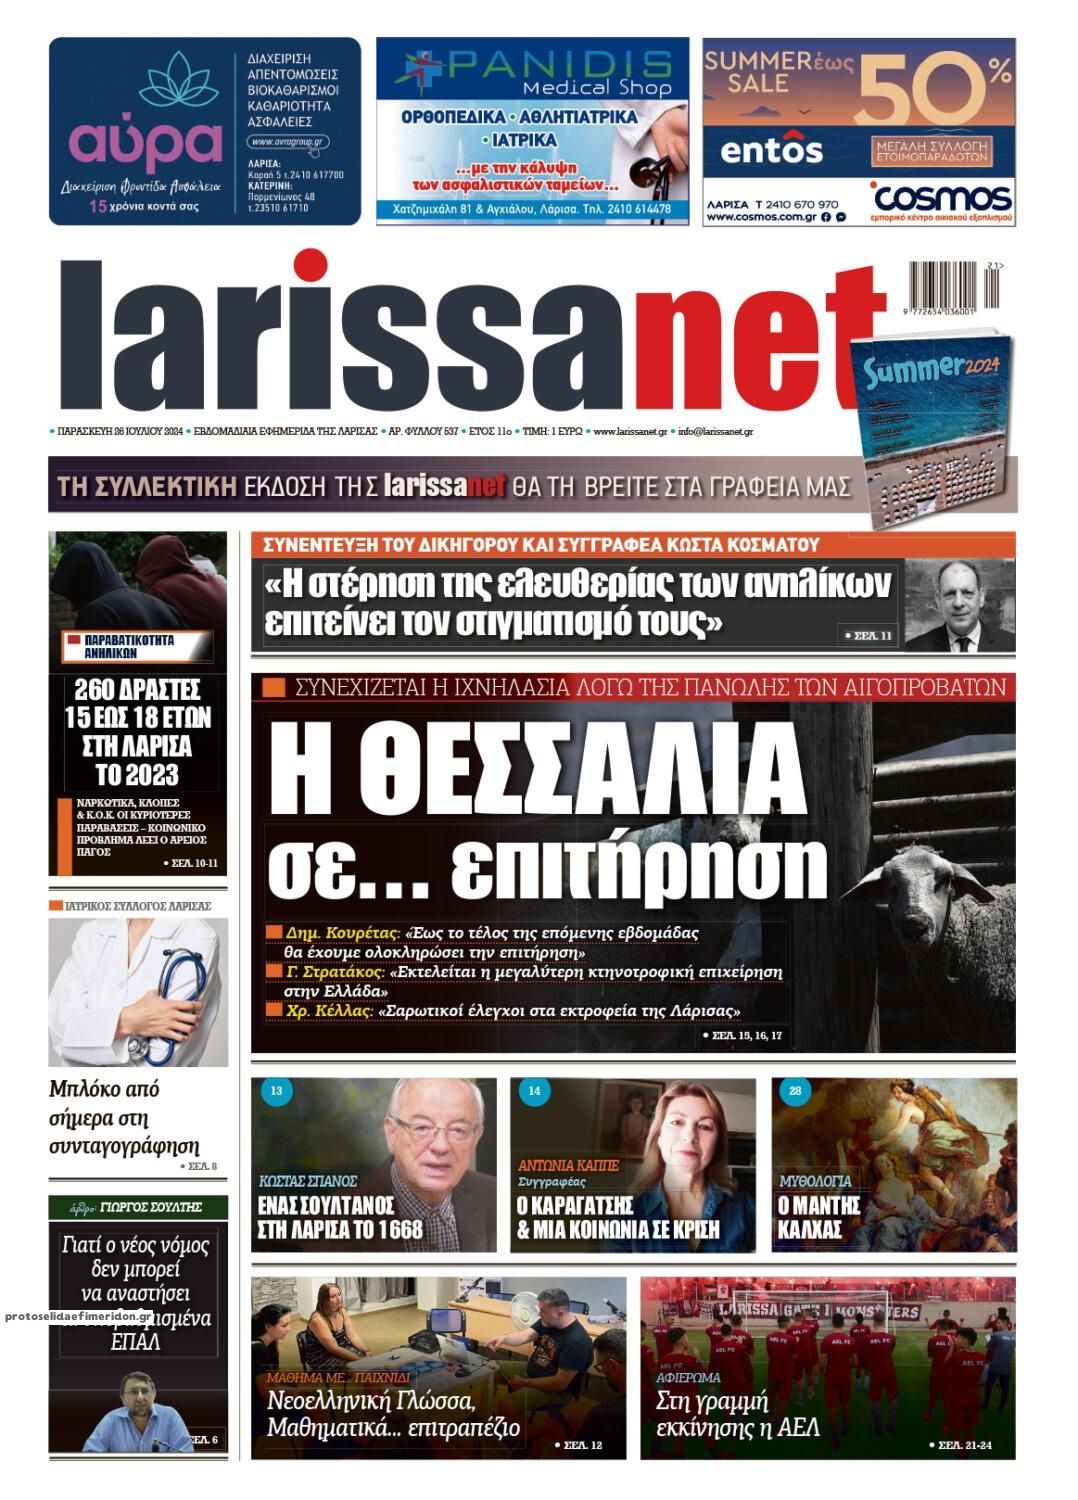 Πρωτοσέλιδο εφημερίδας Larissanet